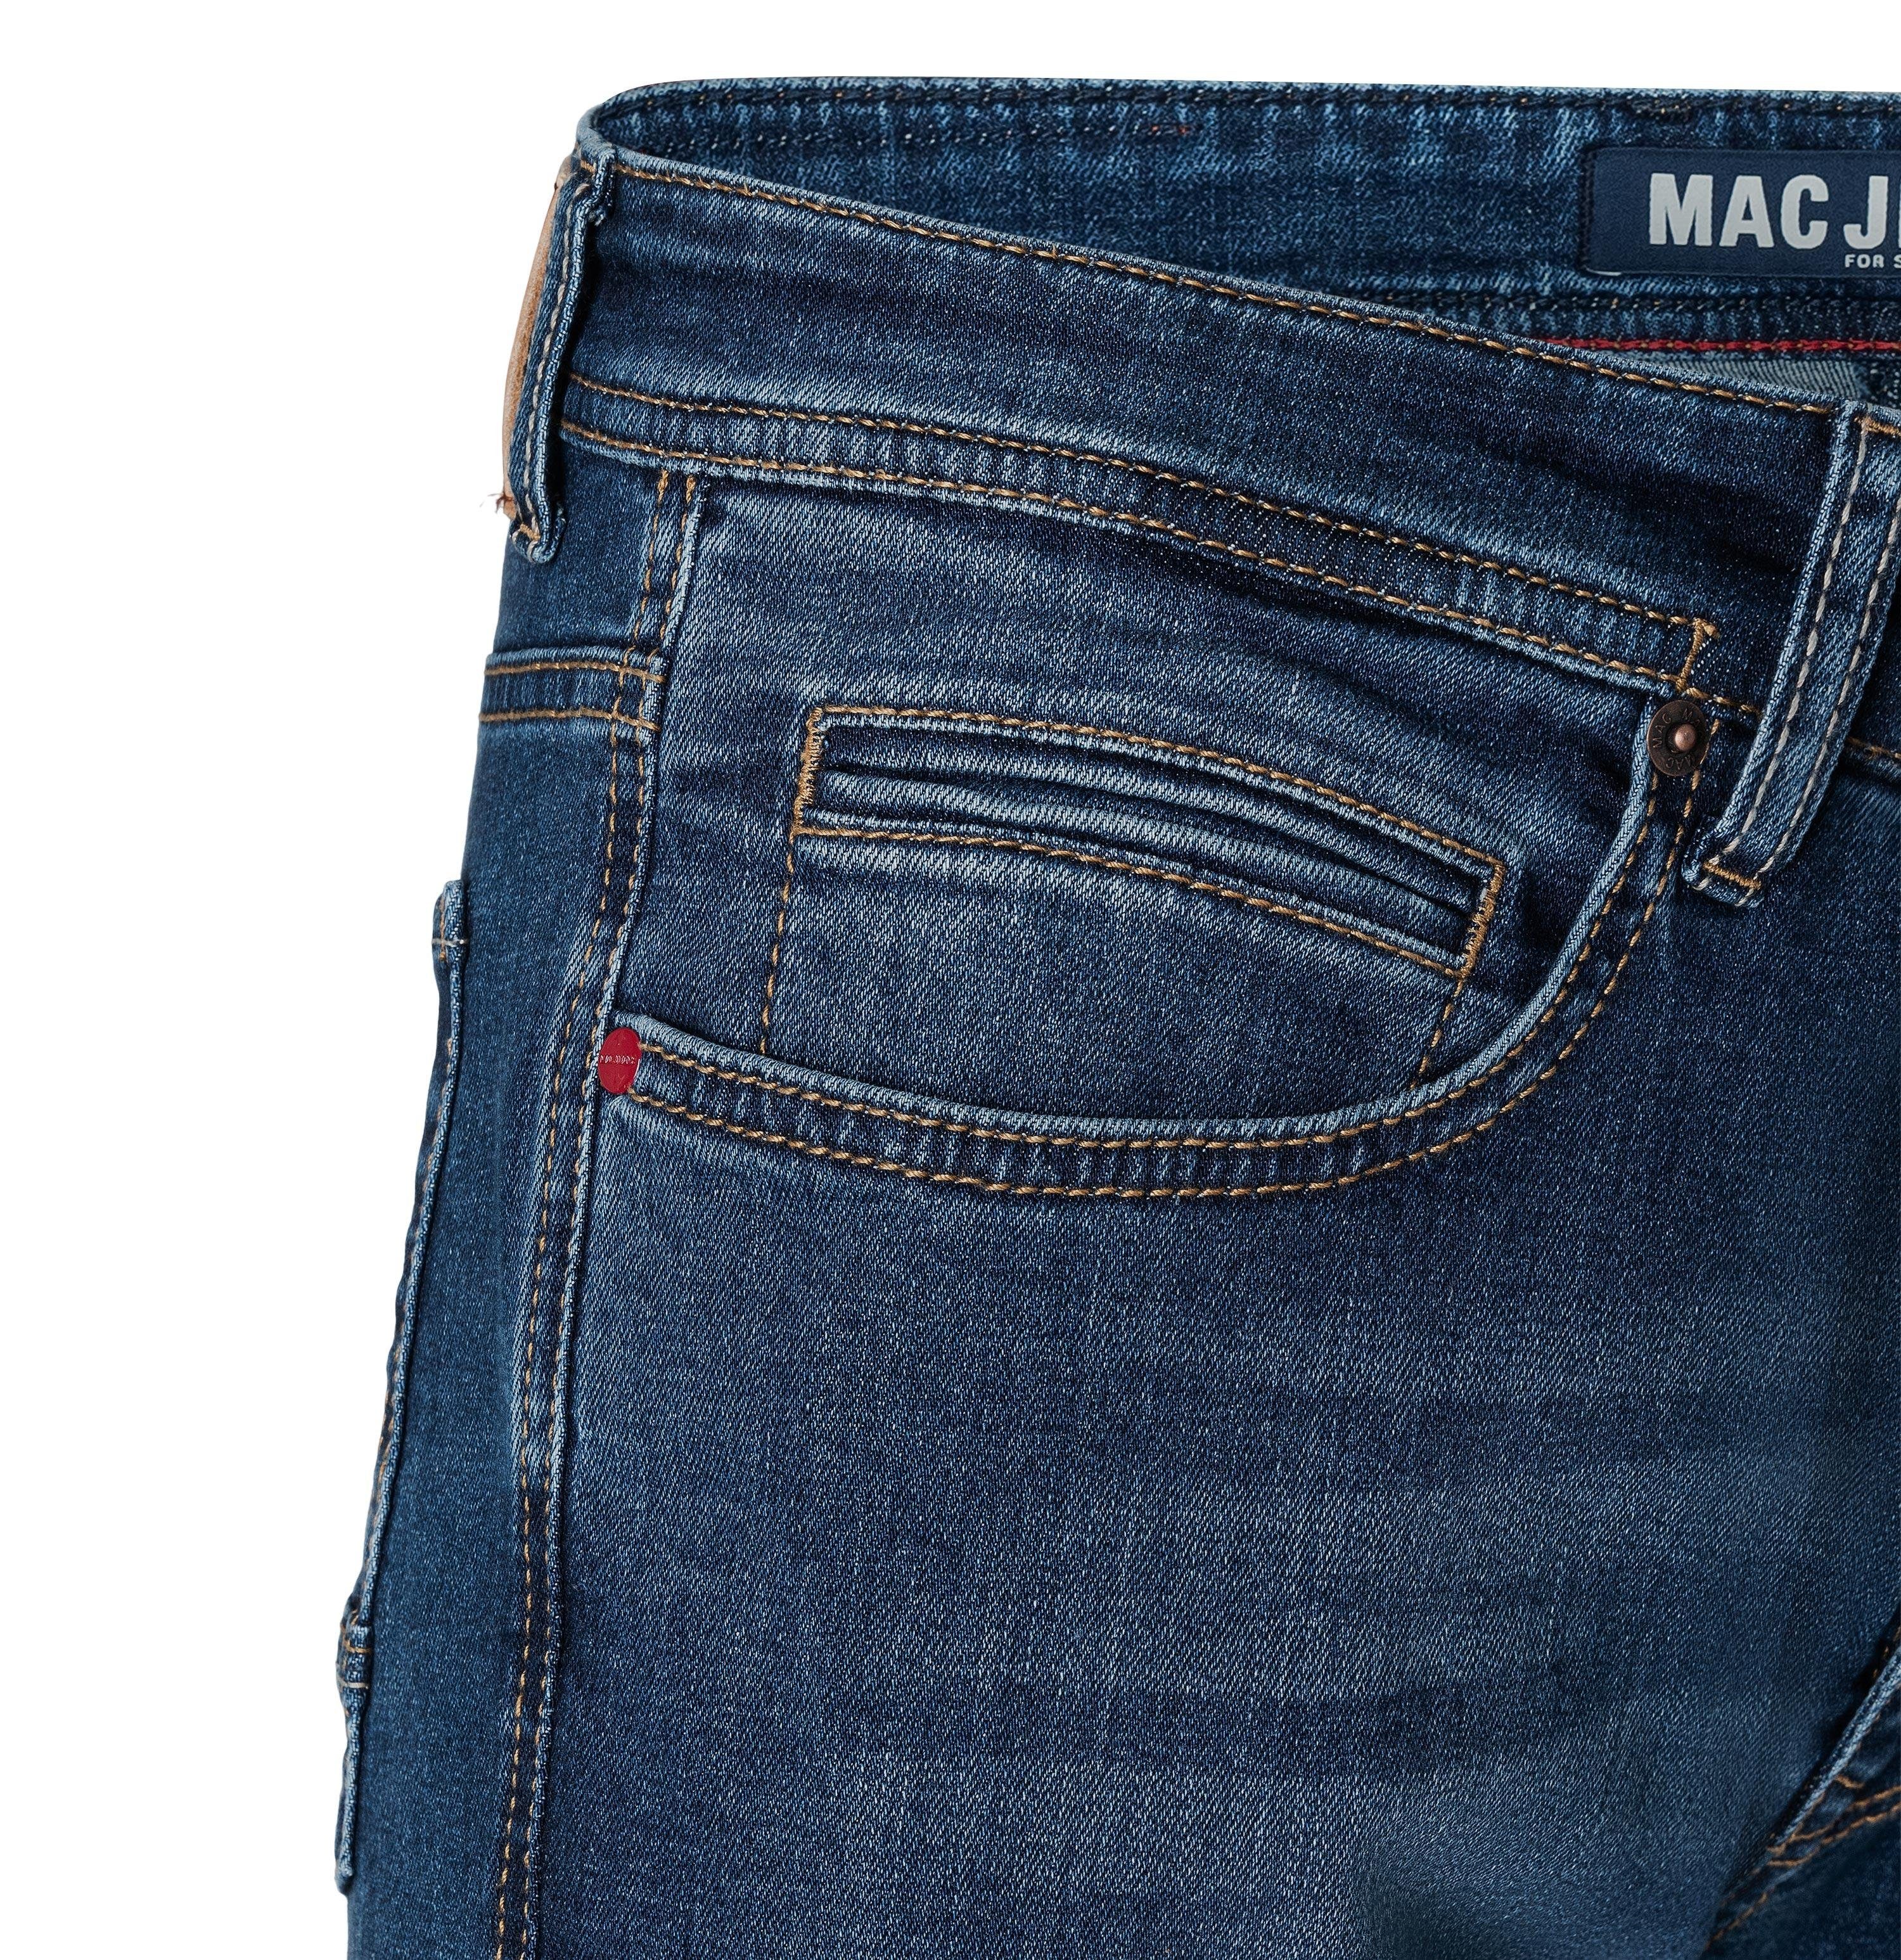 MAC 5-Pocket-Jeans MAC ARNE 0500-00-0978-H549 Blau dark used authentic 0500-00-0978 H549